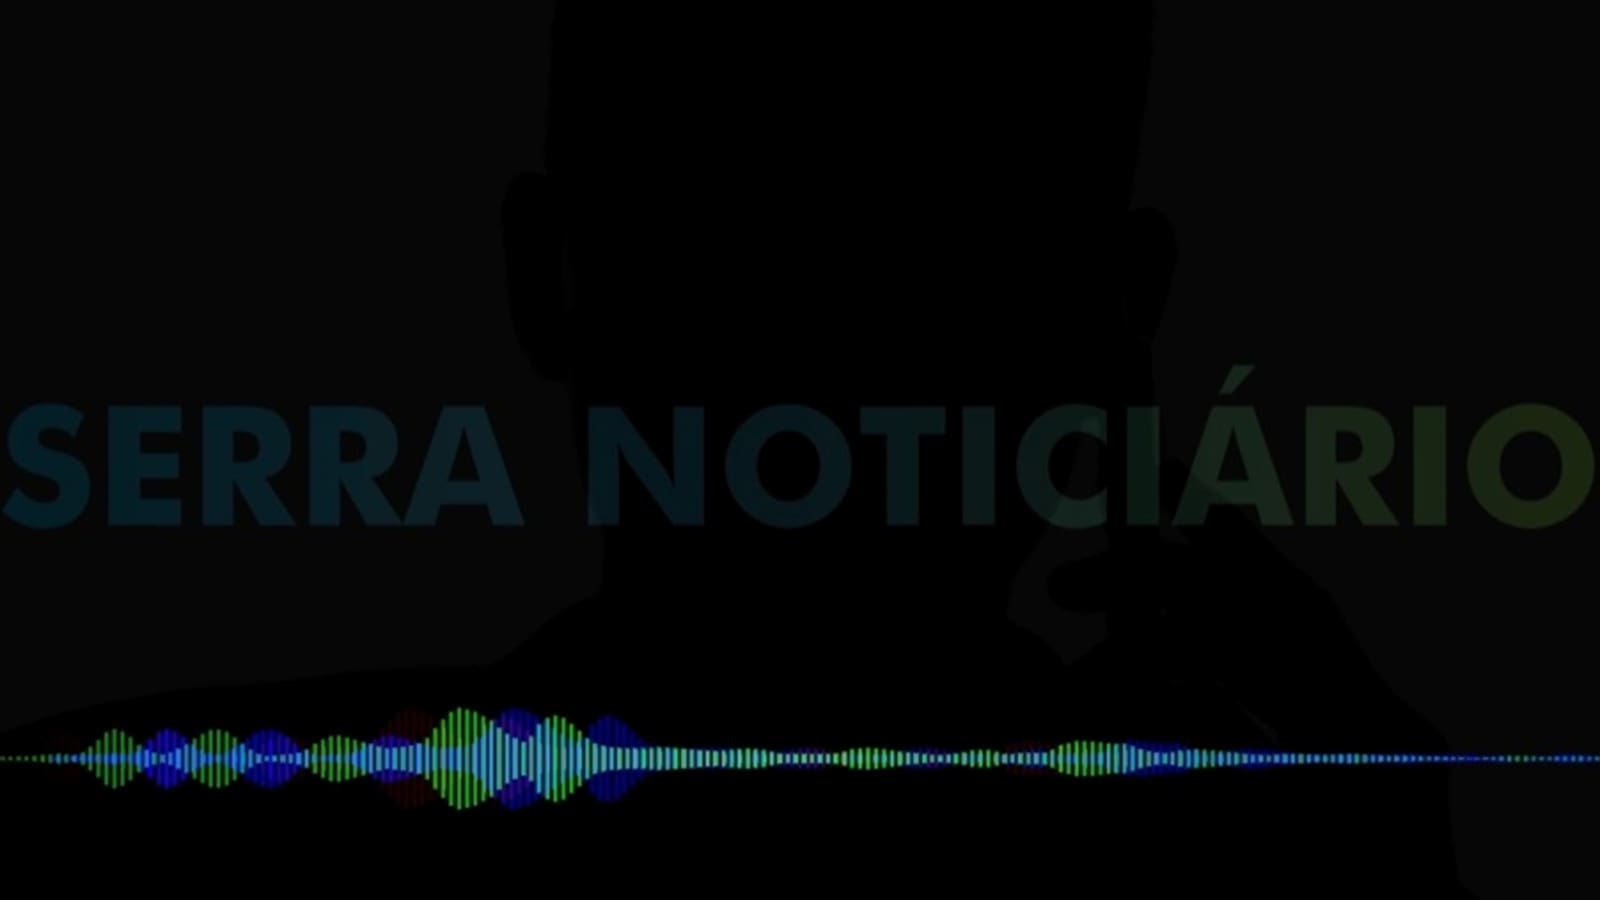 Áudio: sujeito narra uma articulação para retirar sargento Maurício da Serra